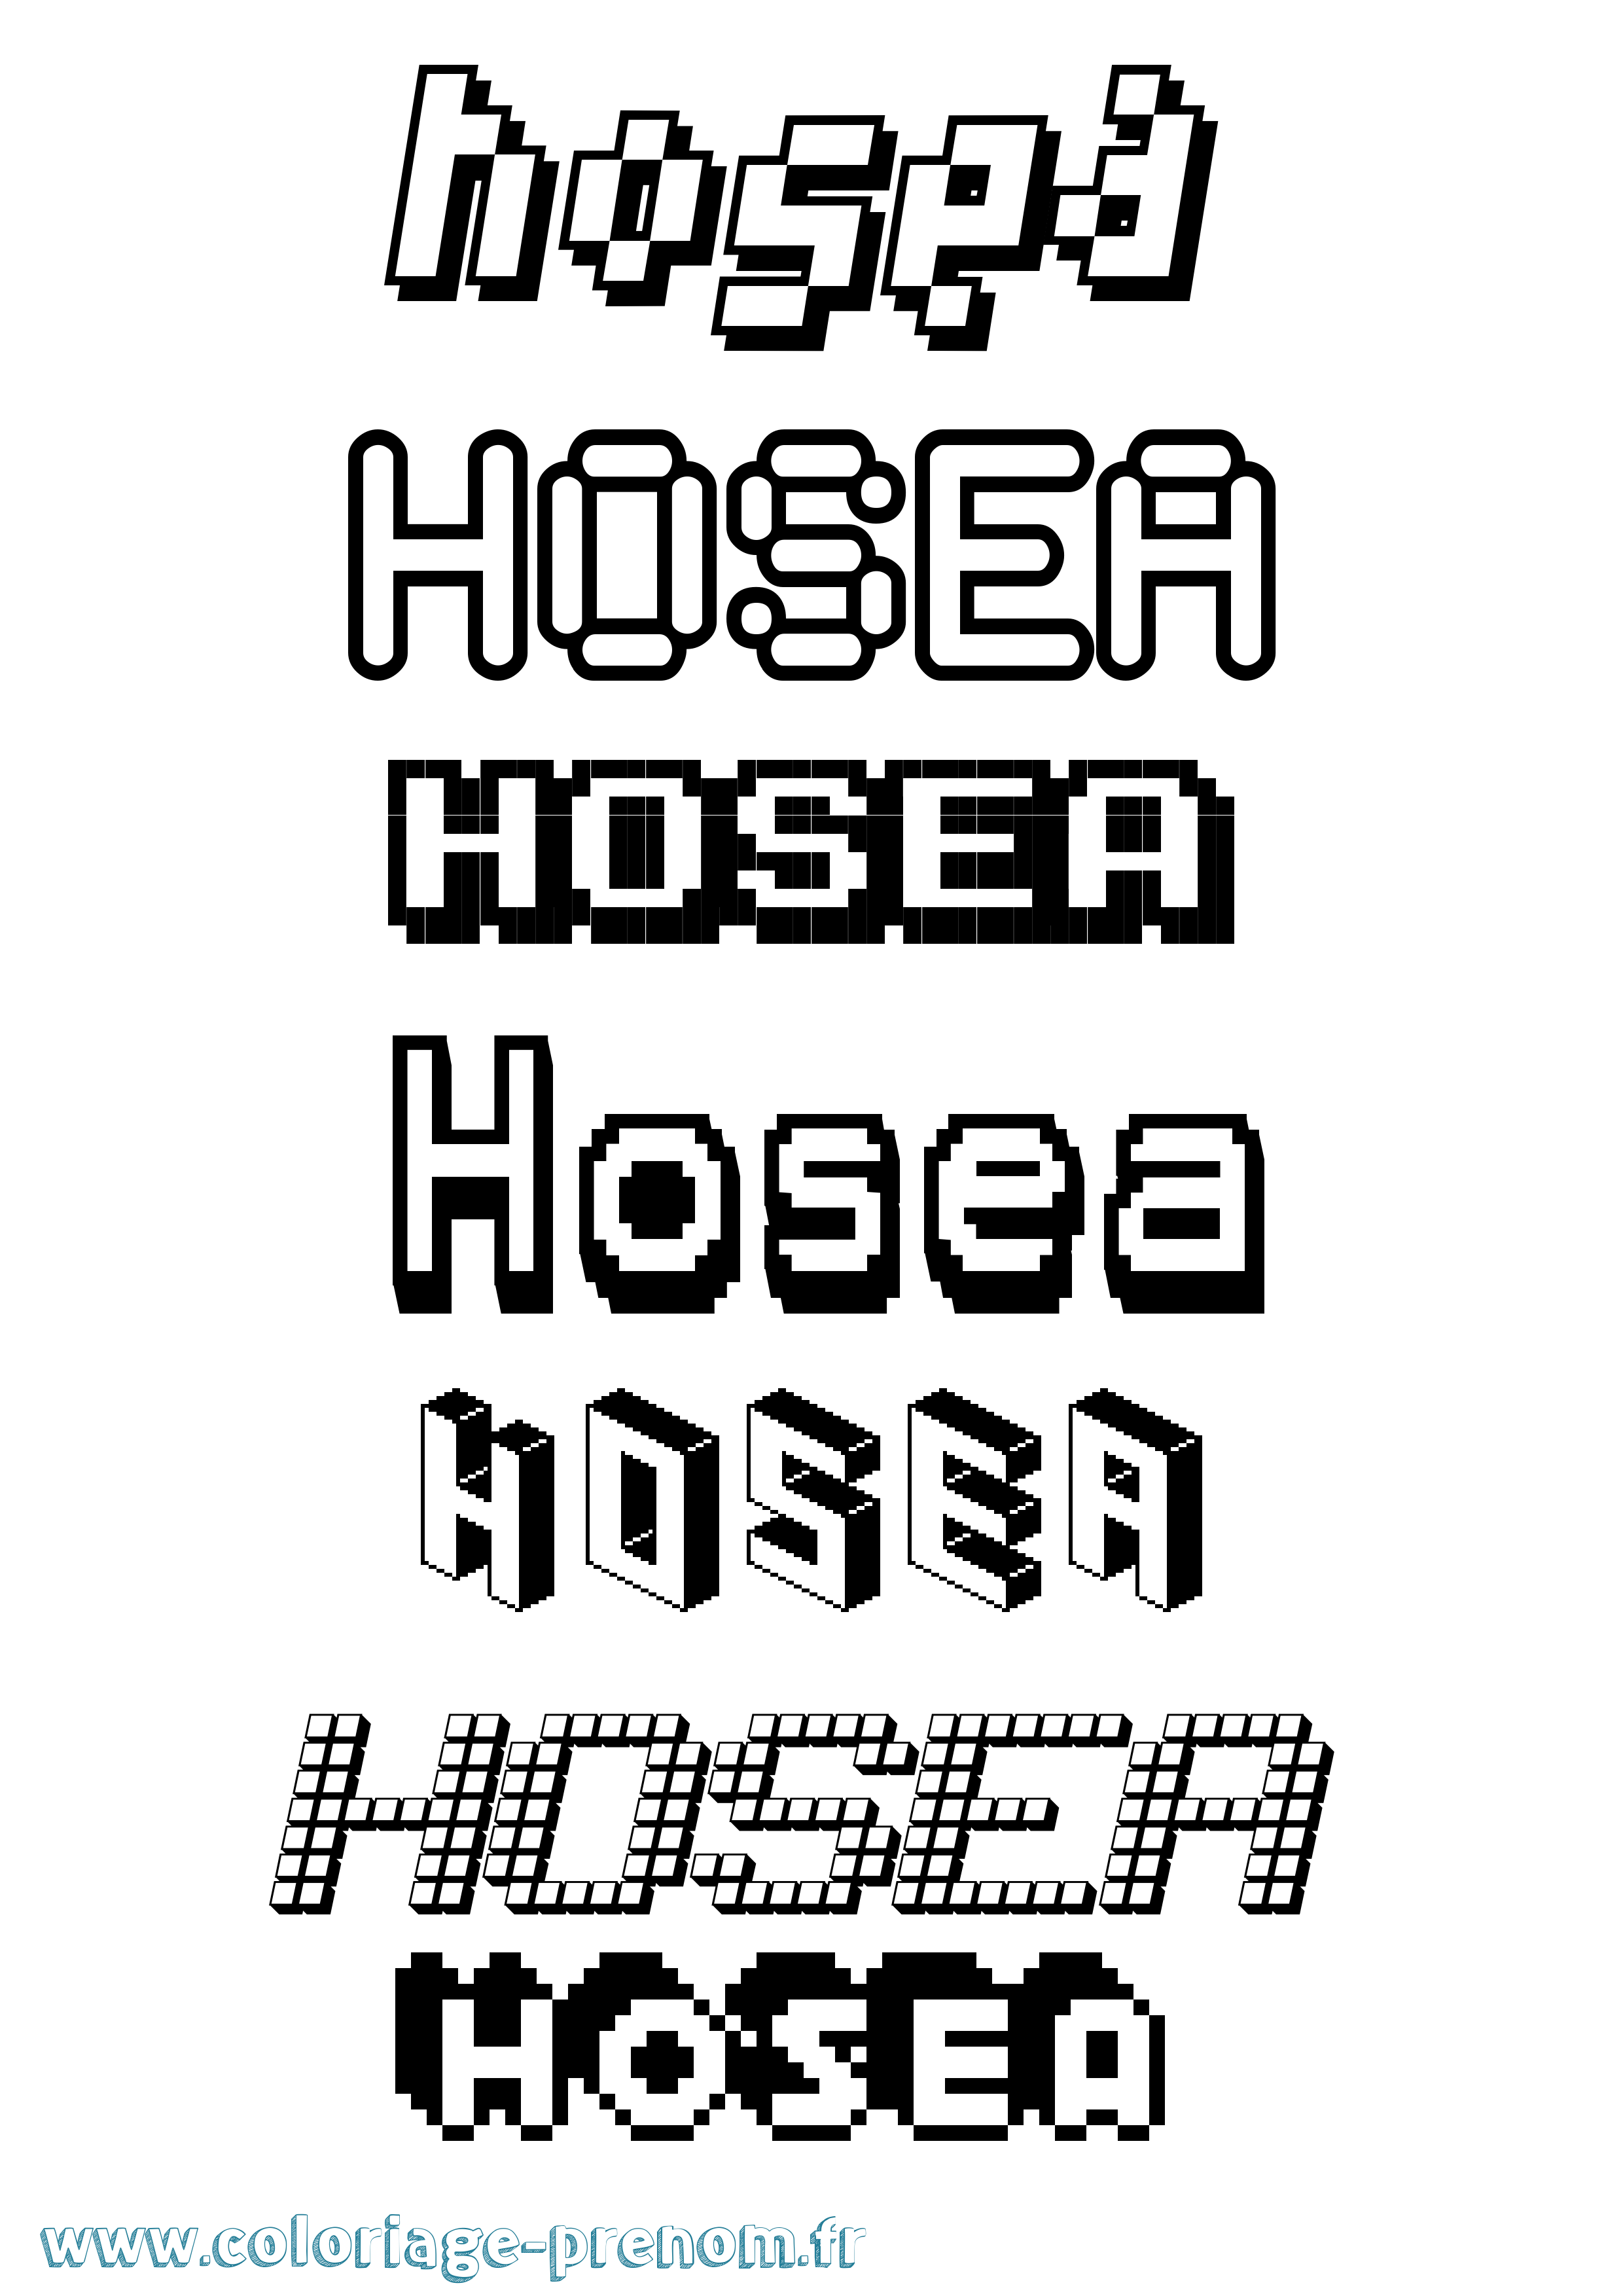 Coloriage prénom Hosea Pixel